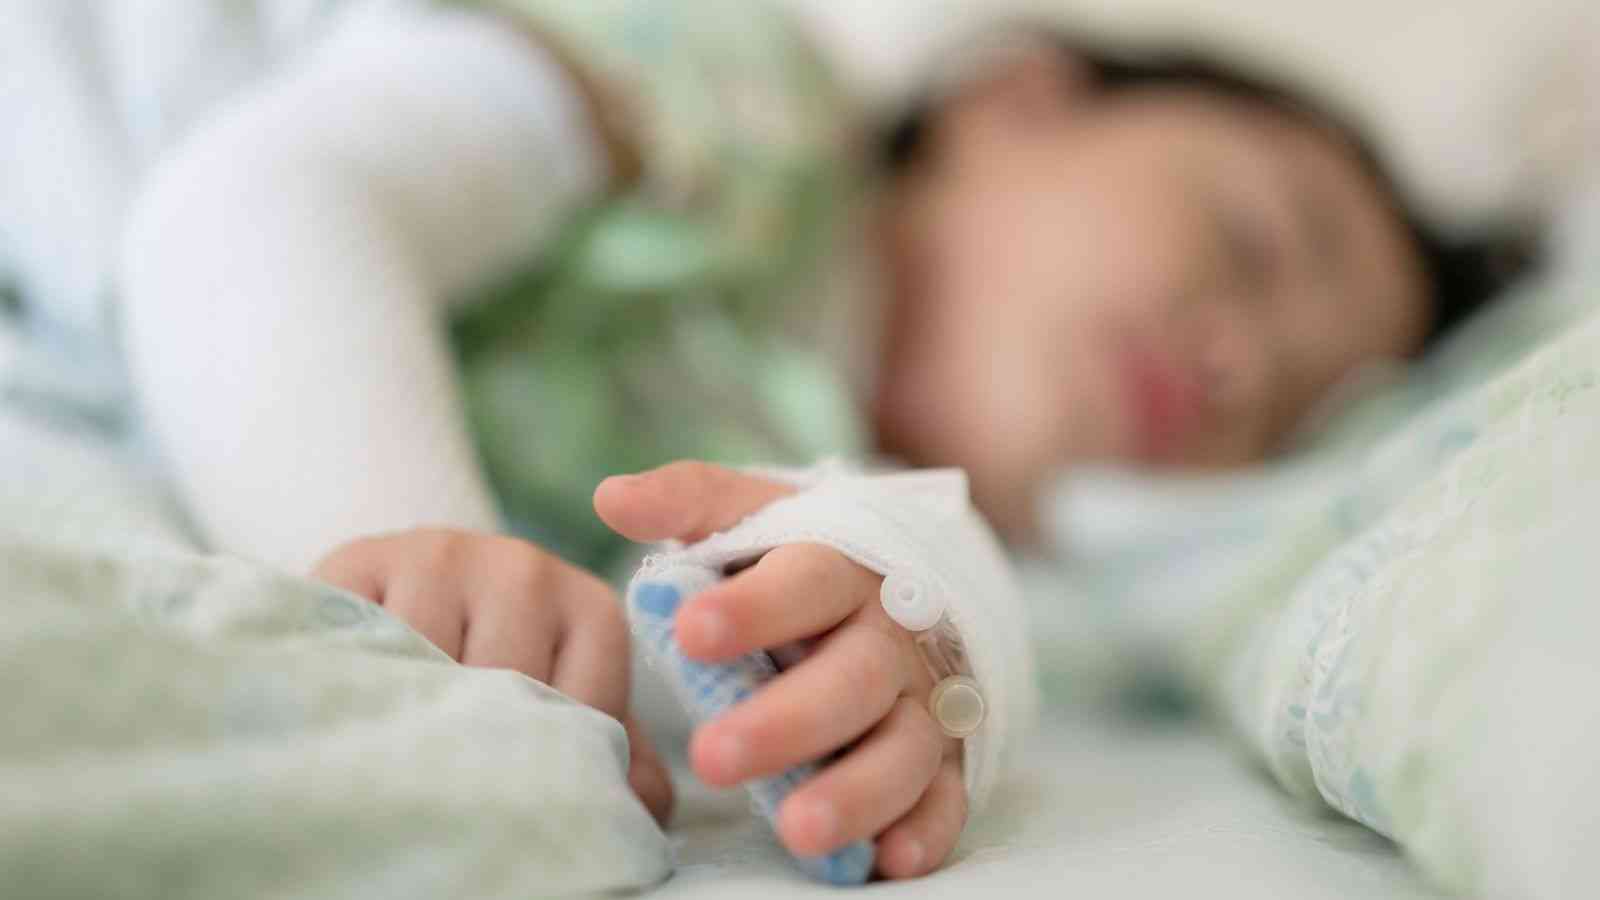 ΕΟΔΥ – οξεία ηπατίτιδα: Δύο ακόμη παιδιά πληρούν τα κριτήρια του «πιθανού κρούσματος» – Δεν διαπιστώνεται ευρεία διασπορά